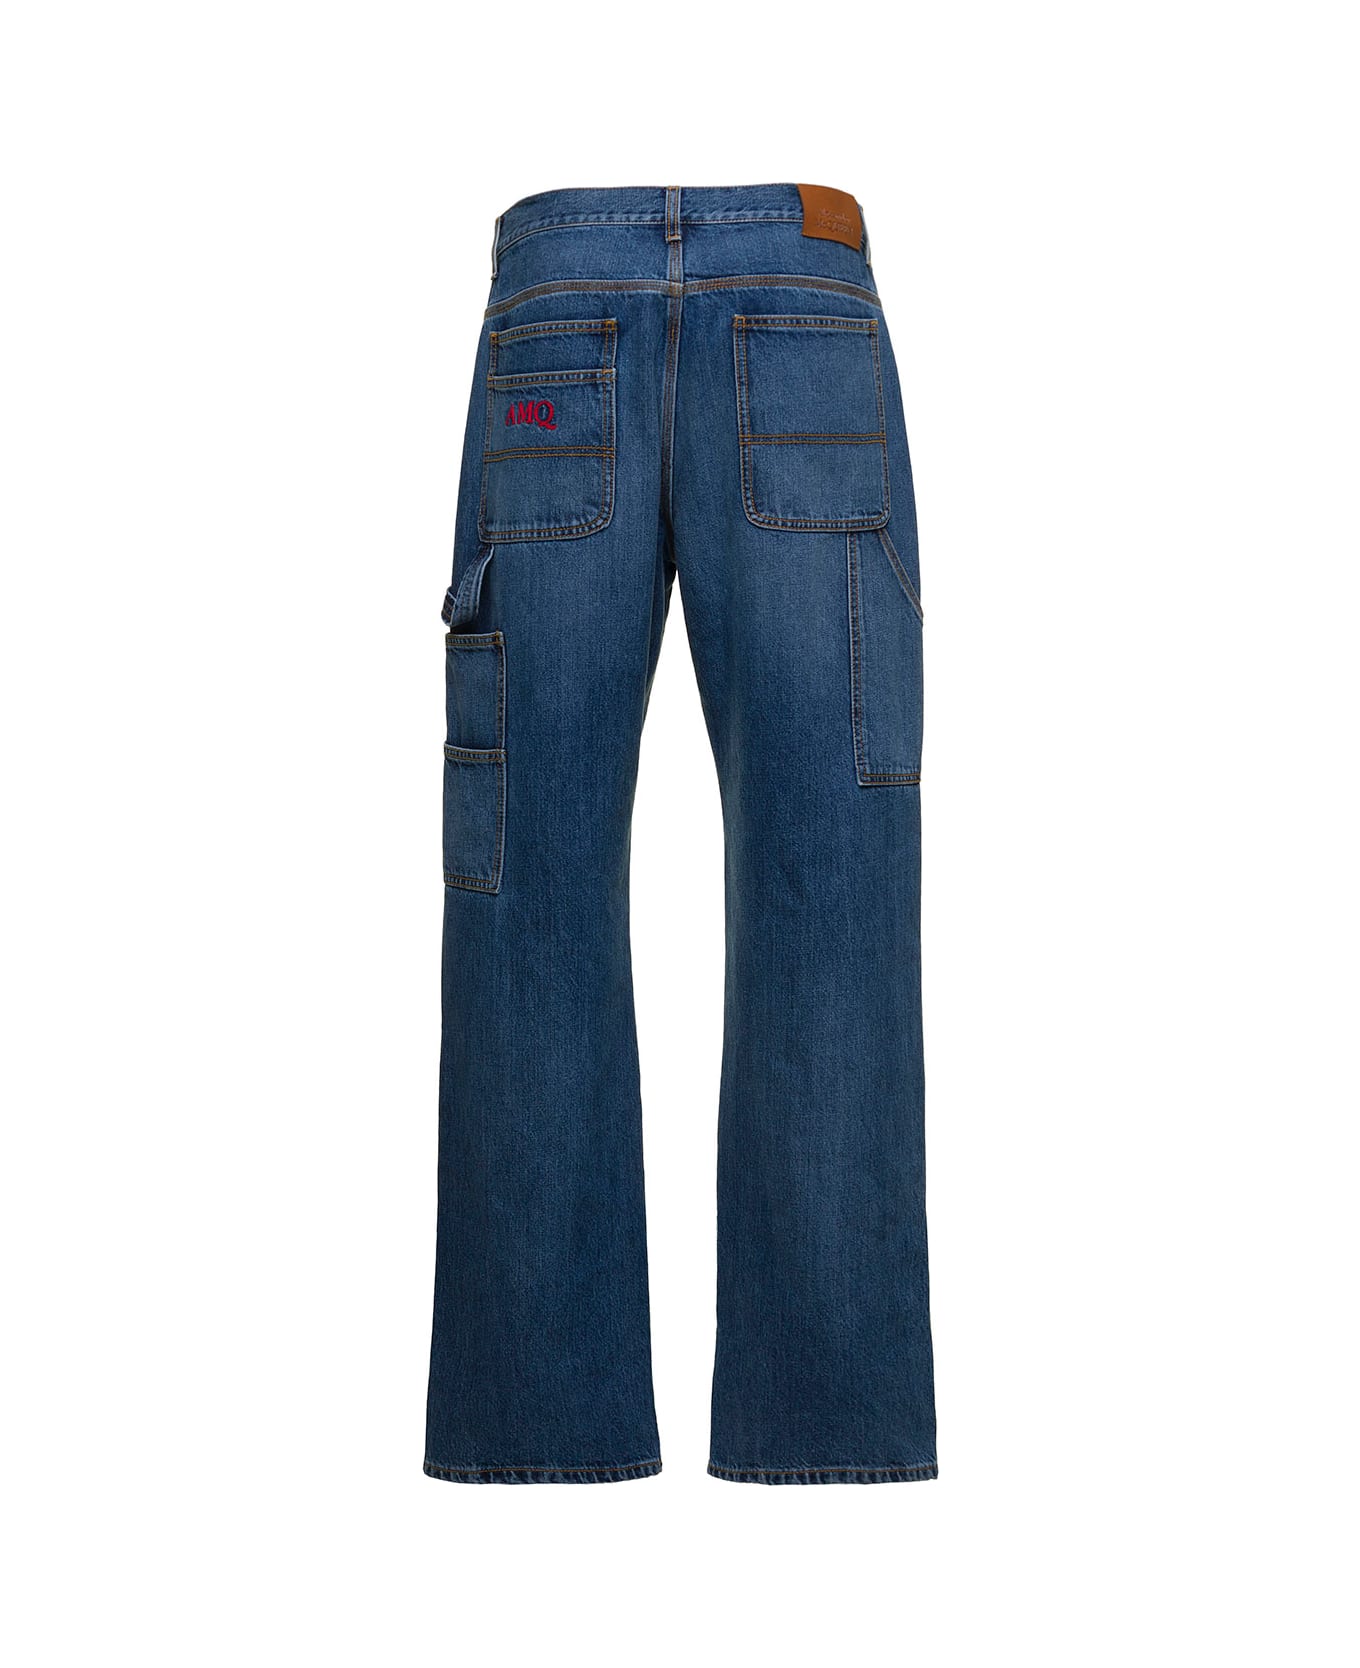 Alexander McQueen 'workwear' Blue Loose Jeans In Cotton Denim Man - Blu デニム